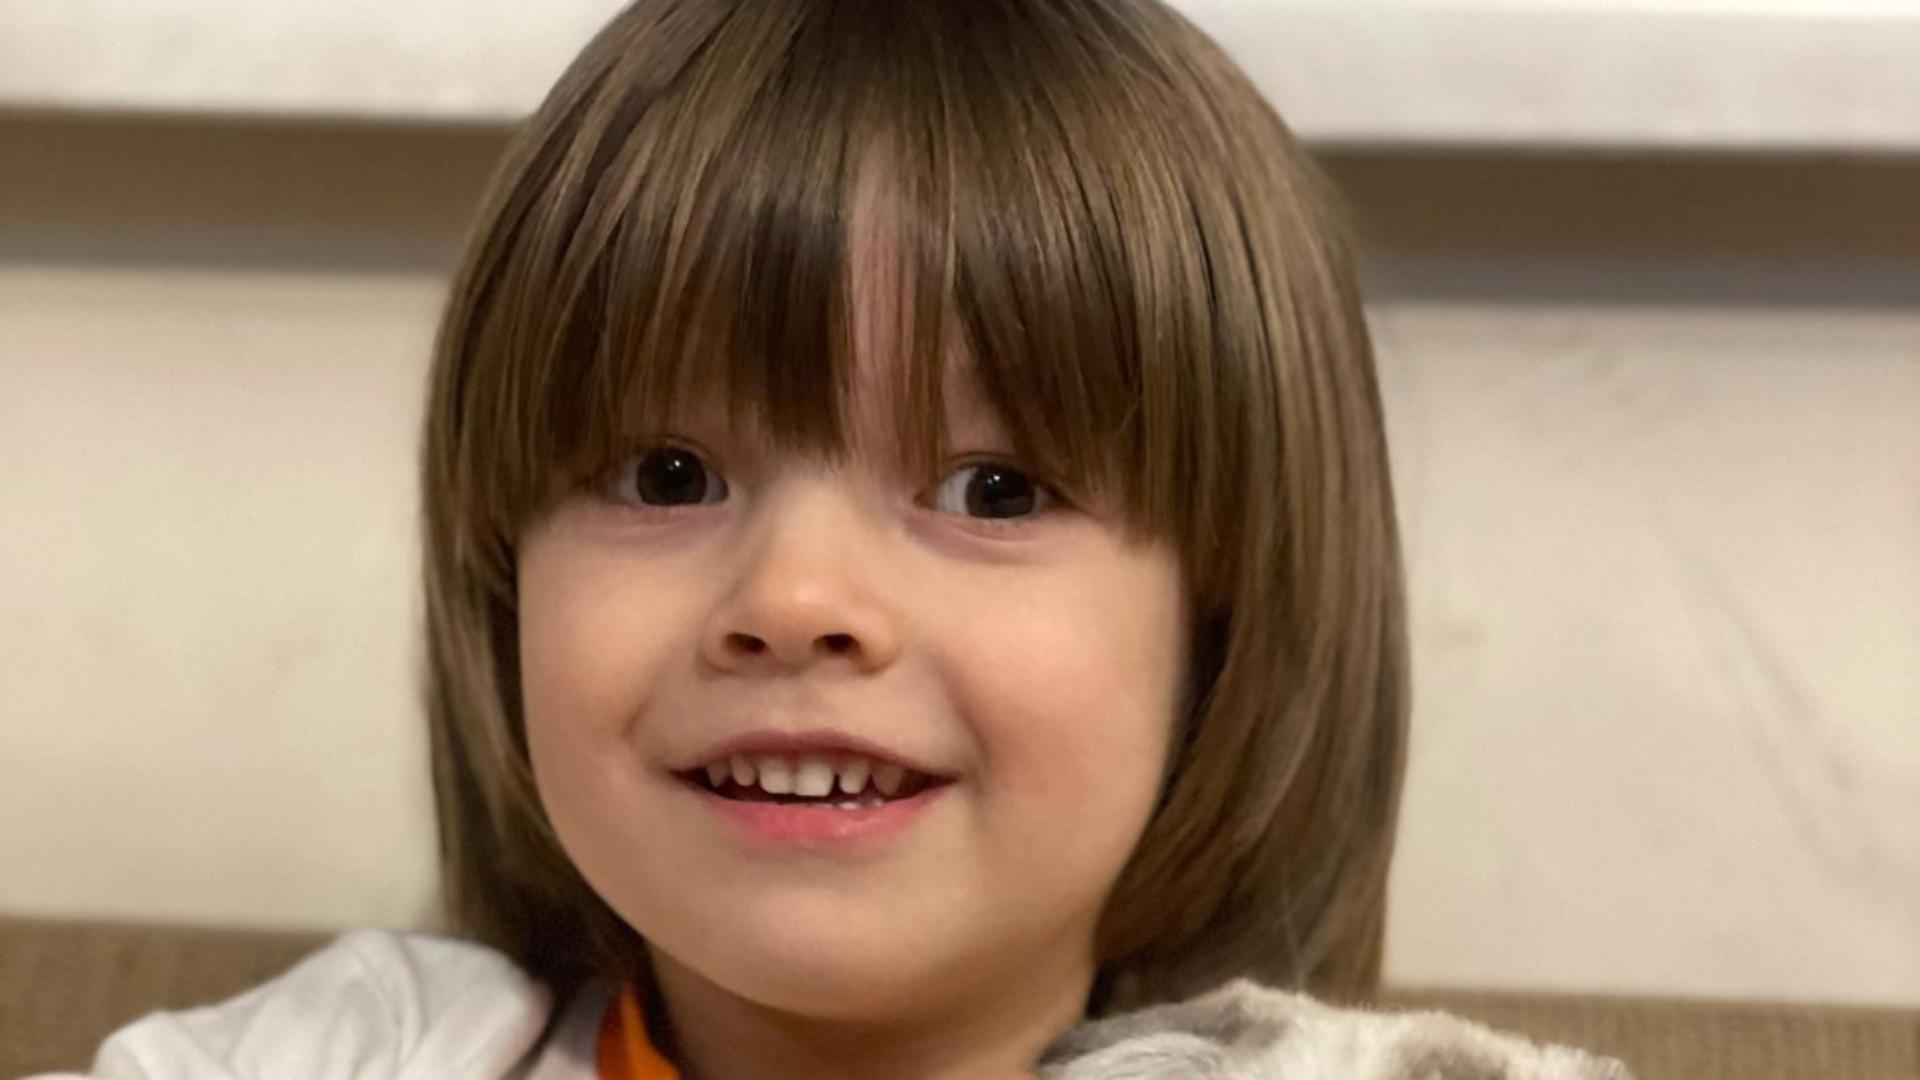 Mobilizare pentru găsirea lui Sasha, un băieţel ucrainean de 4 ani dispărut